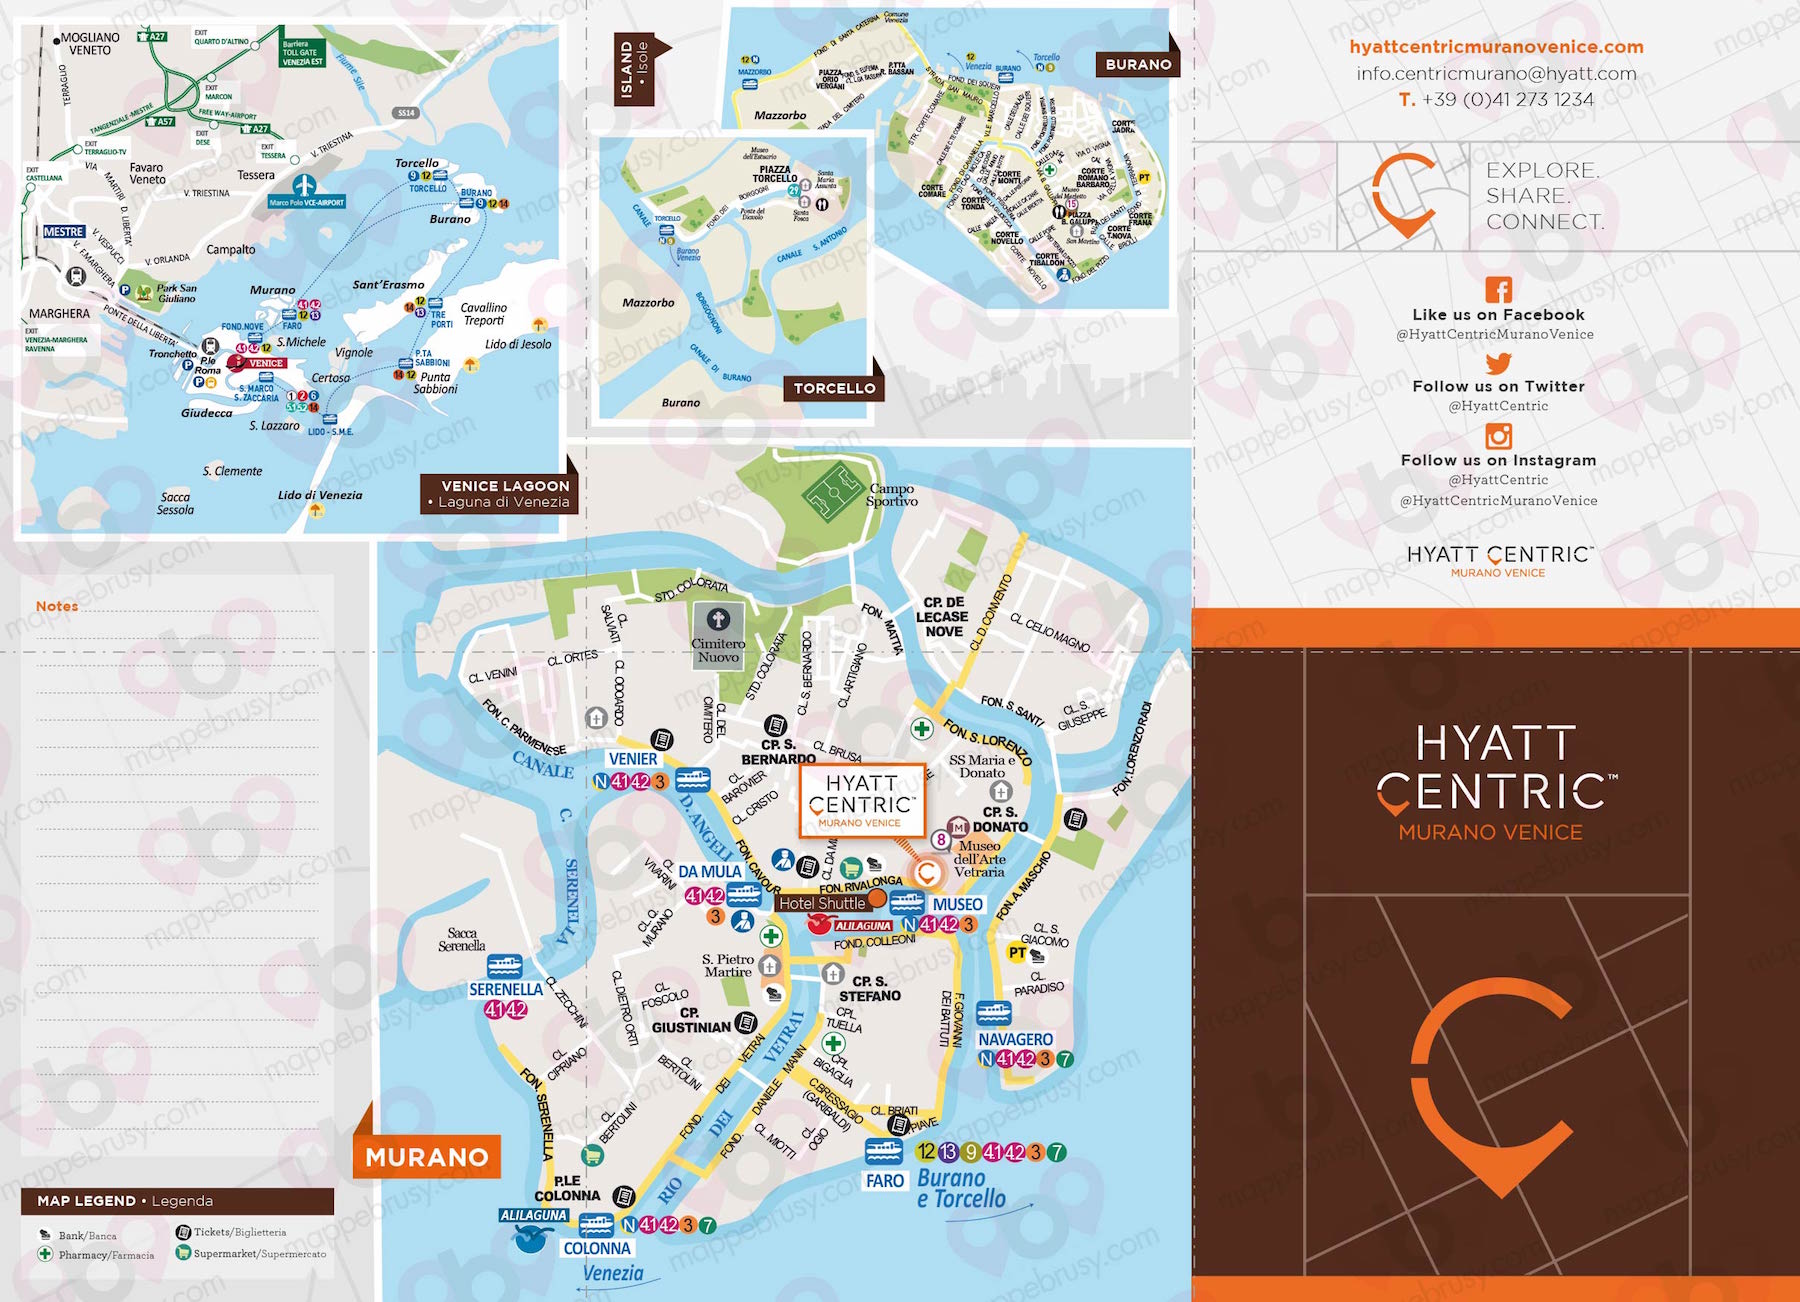 Mappa A3 personalizzata di Venezia per Hyatt Centric Murano Venice